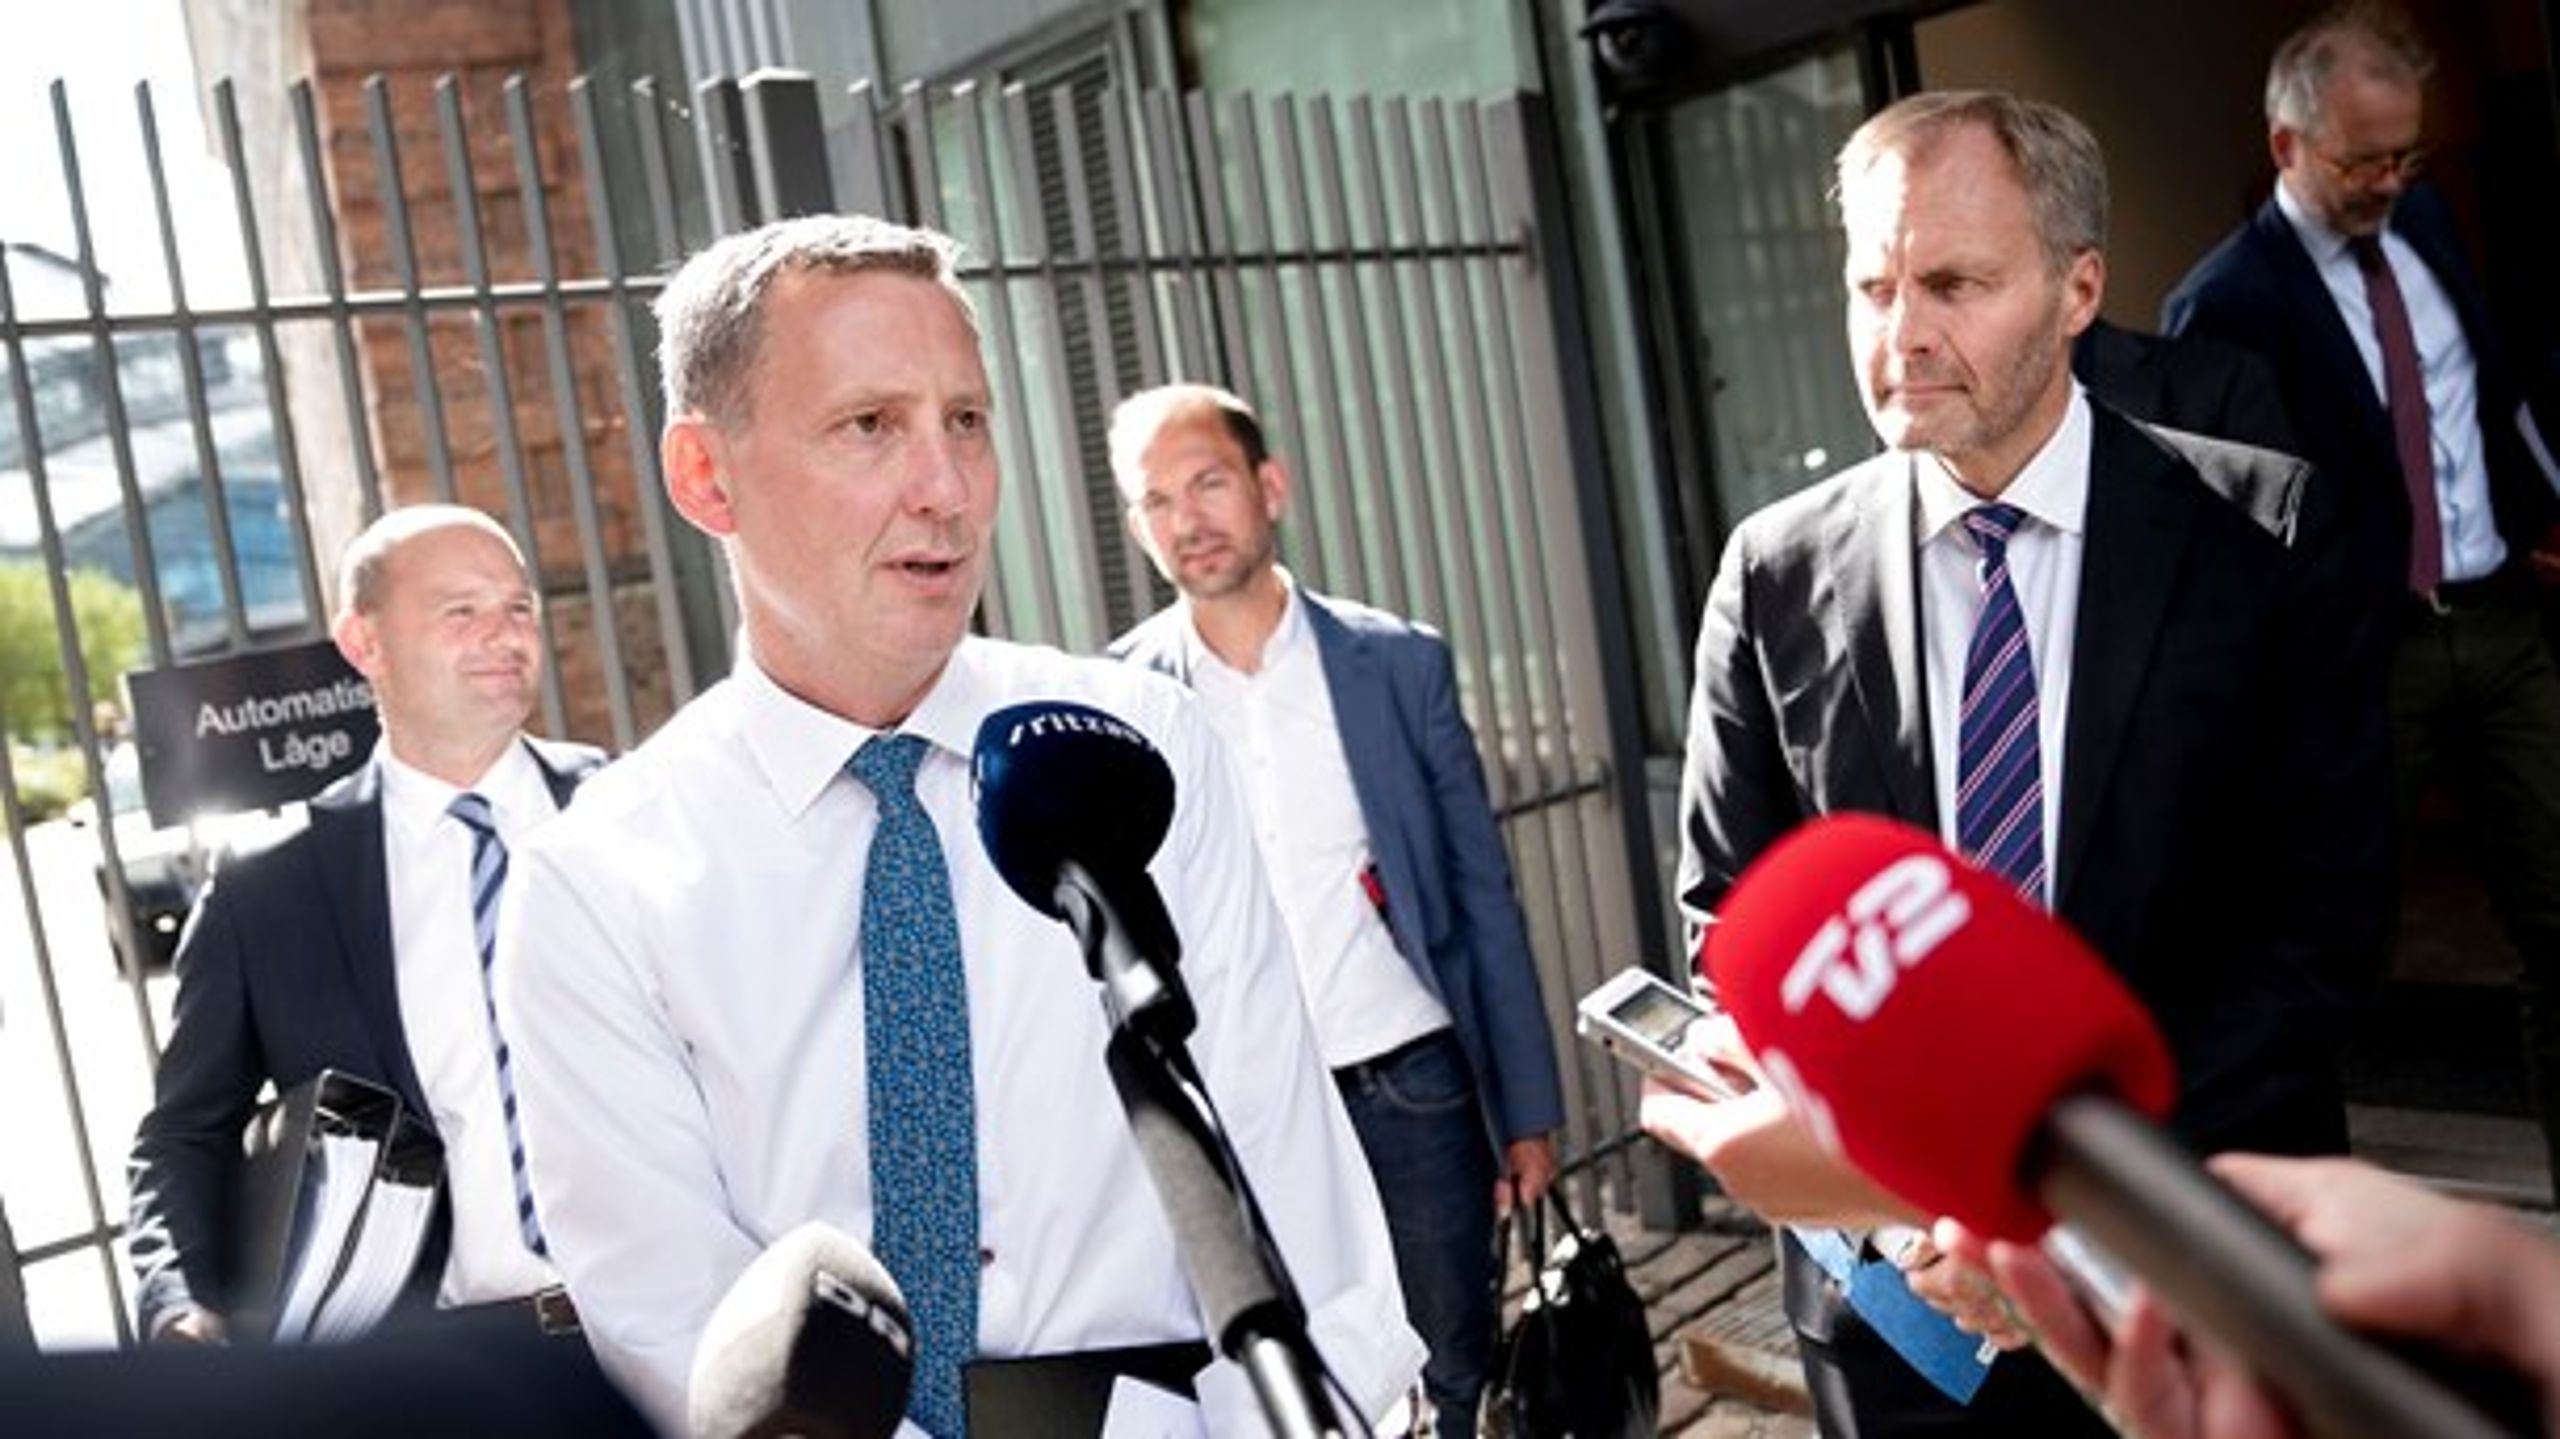 Justitsminister Nick Hækkerup (S) indledte forhandlingerne om en ny politireform i august.